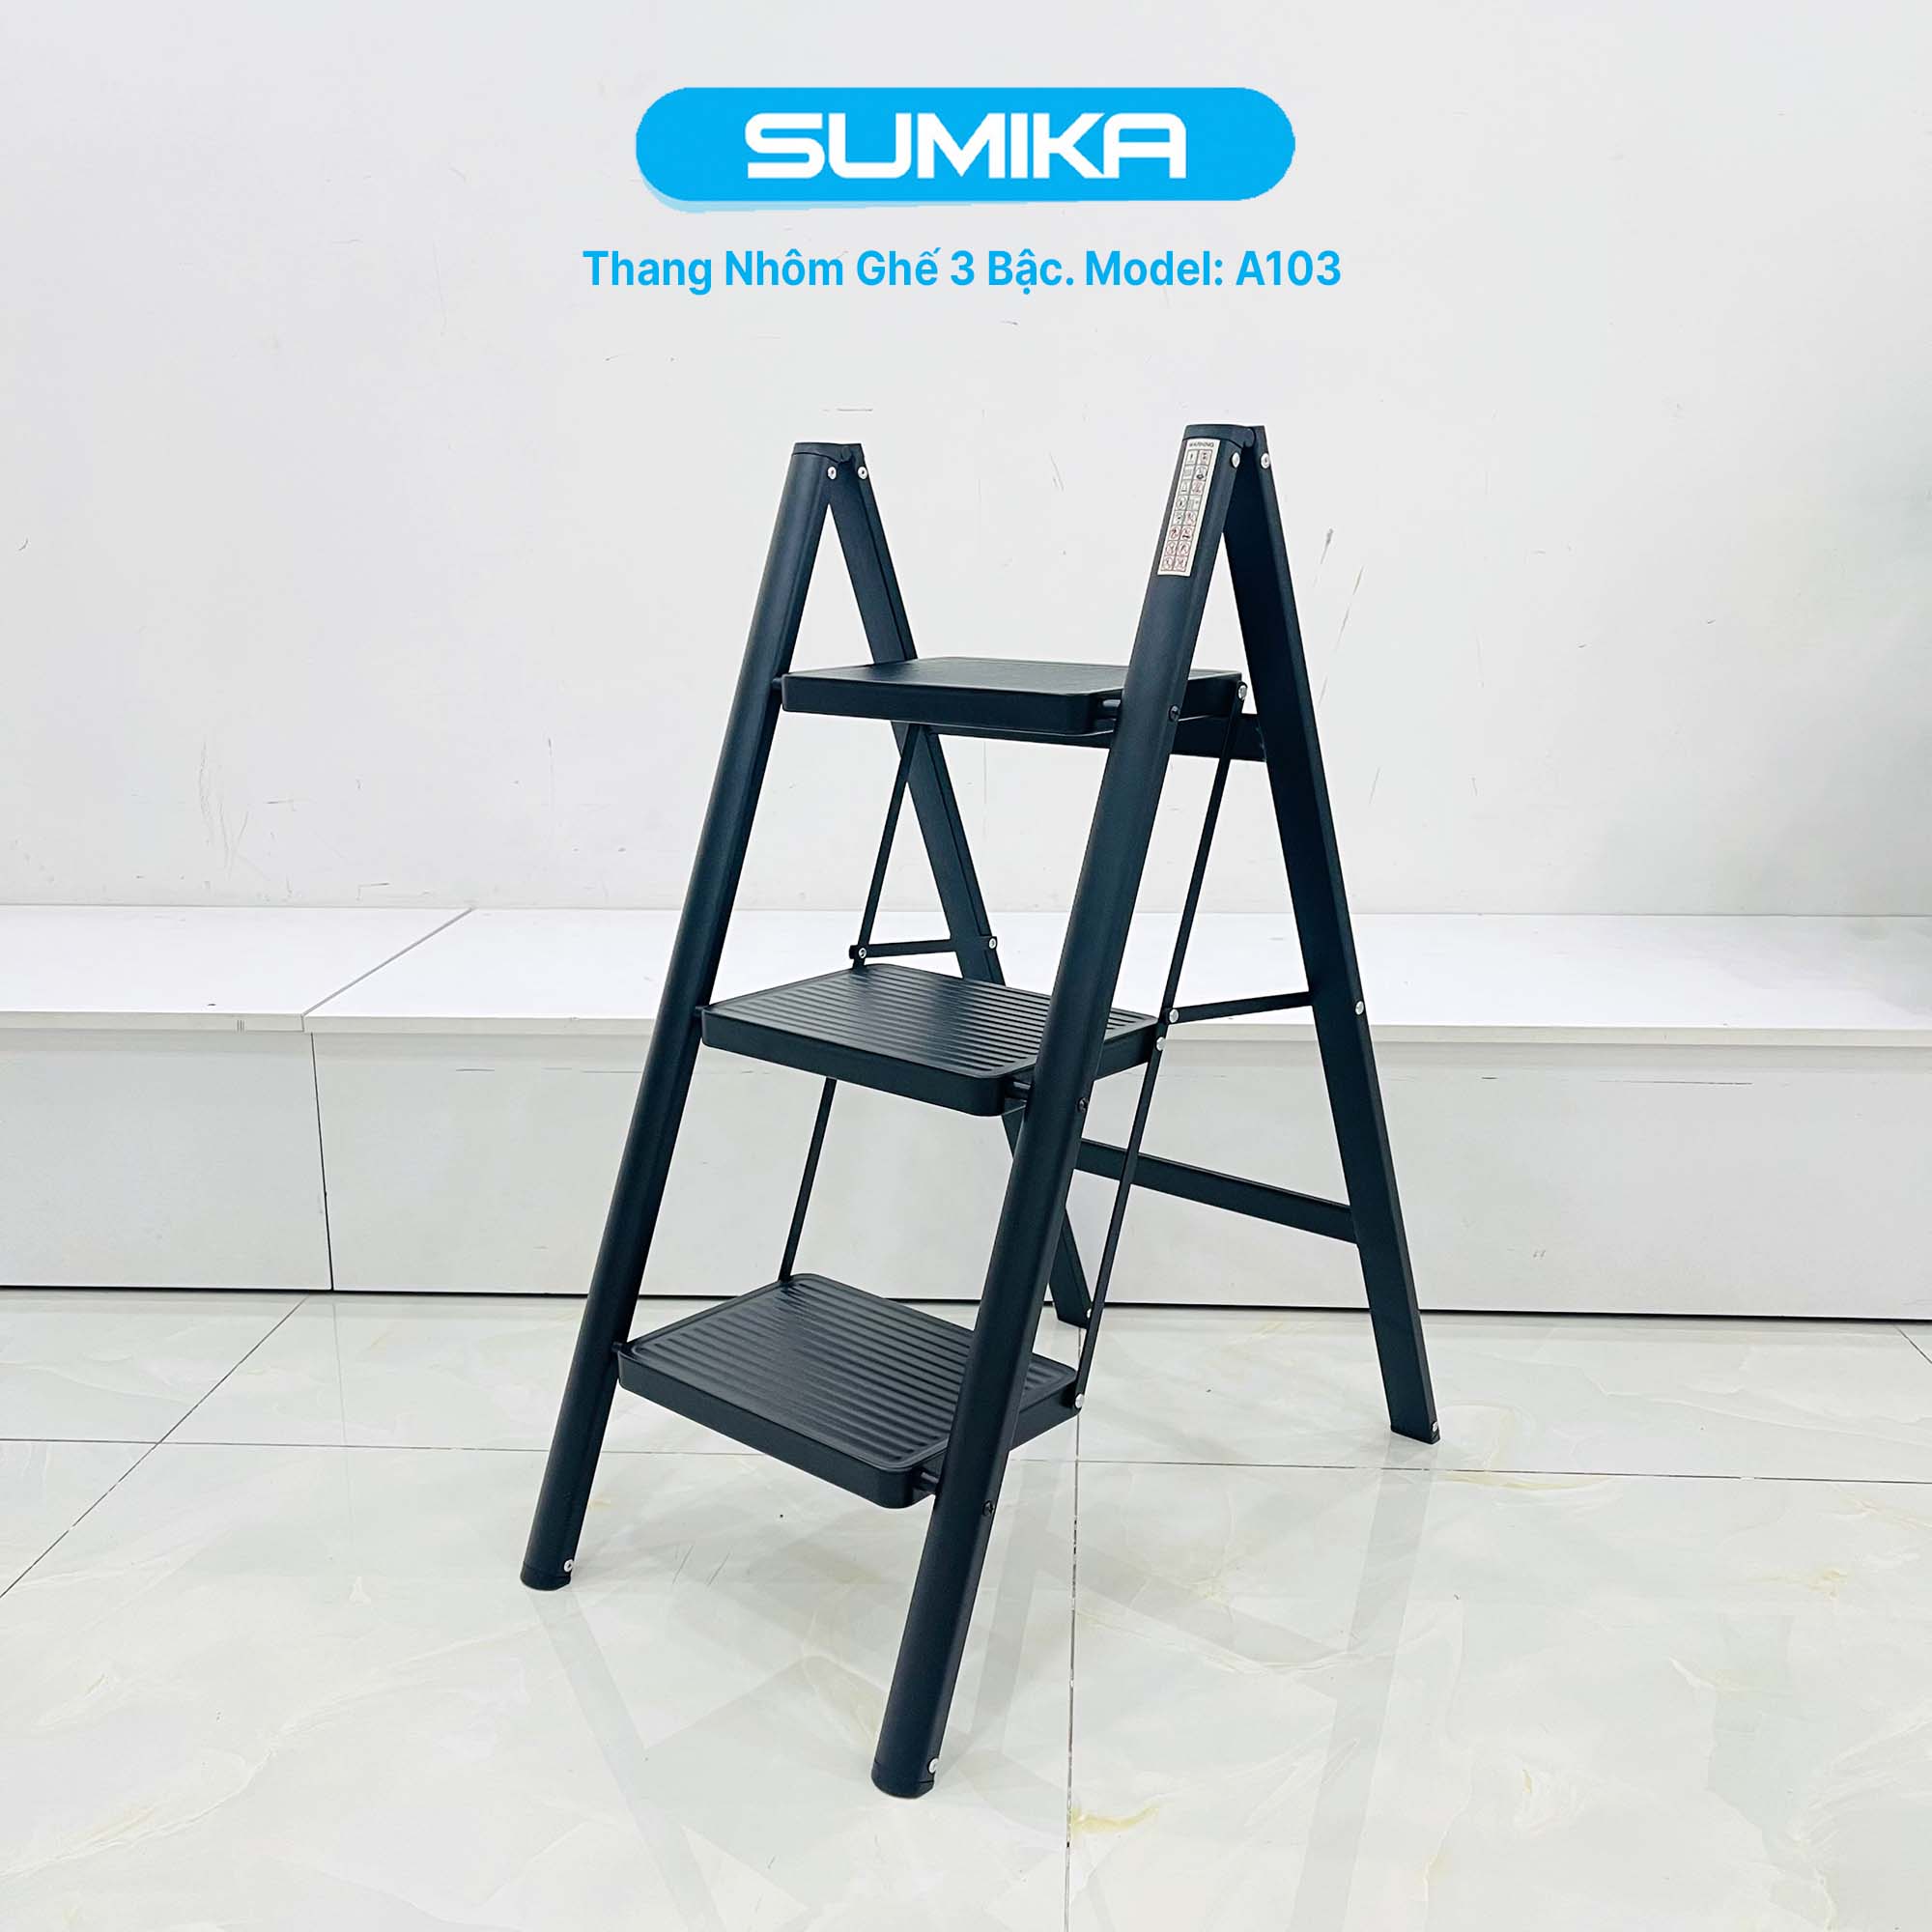 Thang nhôm ghế 3 bậc SUMIKA A103 (Black), chiều cao 68cm